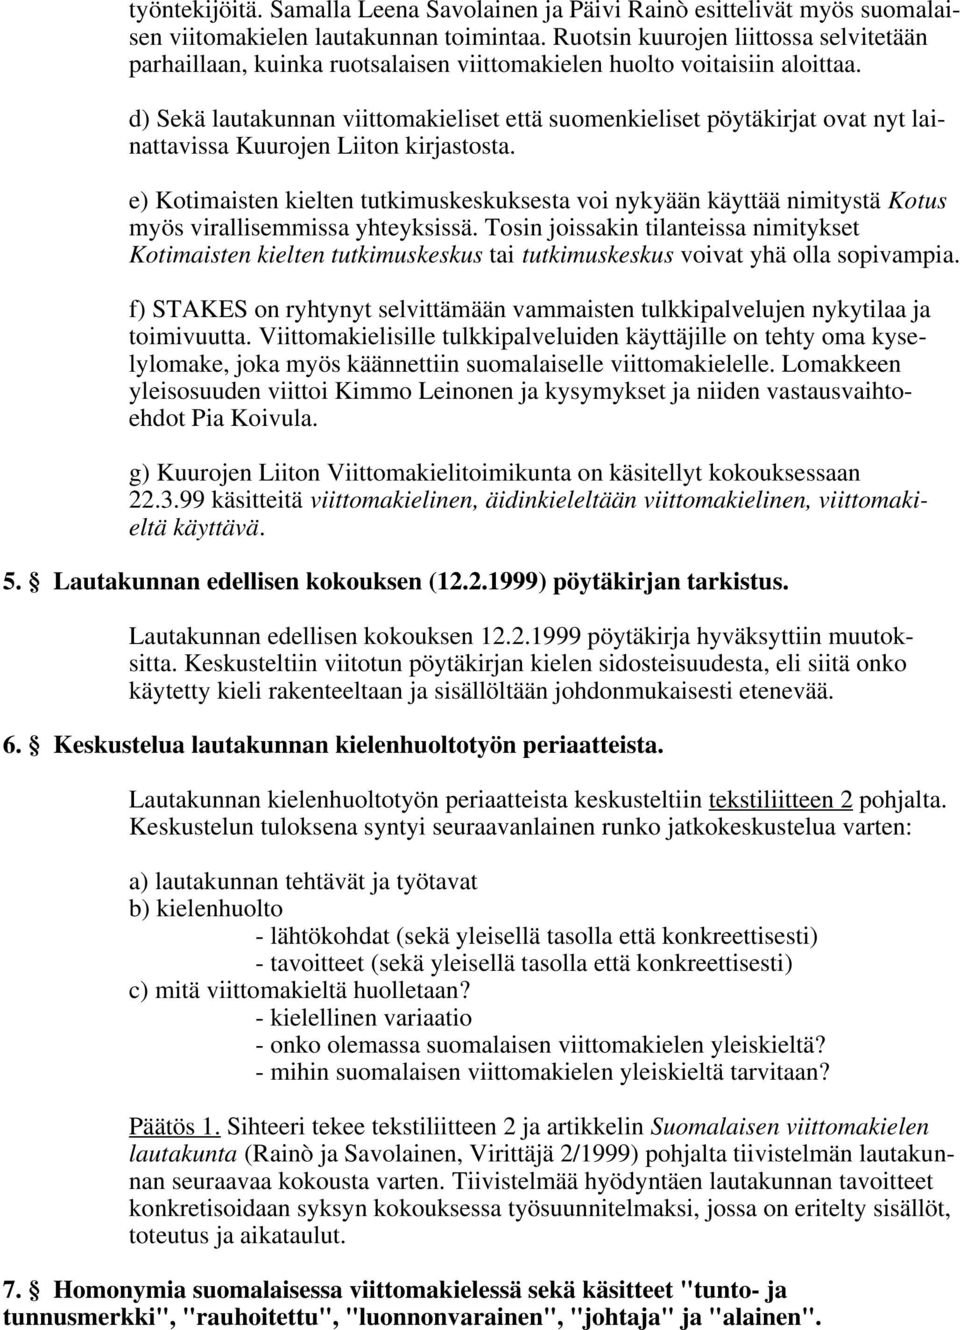 d) Sekä lautakunnan viittomakieliset että suomenkieliset pöytäkirjat ovat nyt lainattavissa Kuurojen Liiton kirjastosta.